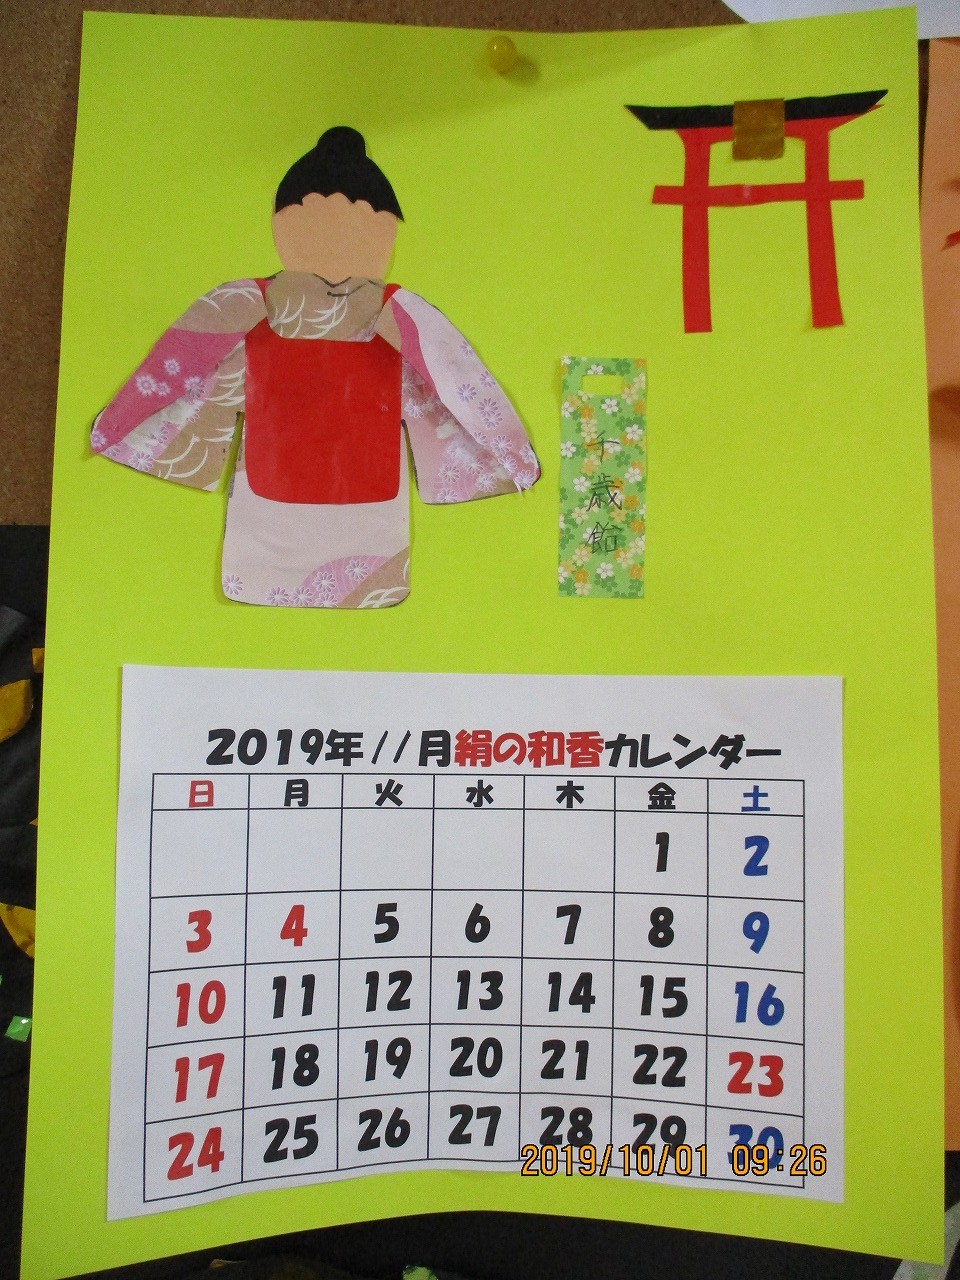 公式 デイサービス絹の和香 熊本市 介護正社員 パートの求人 女性歓迎